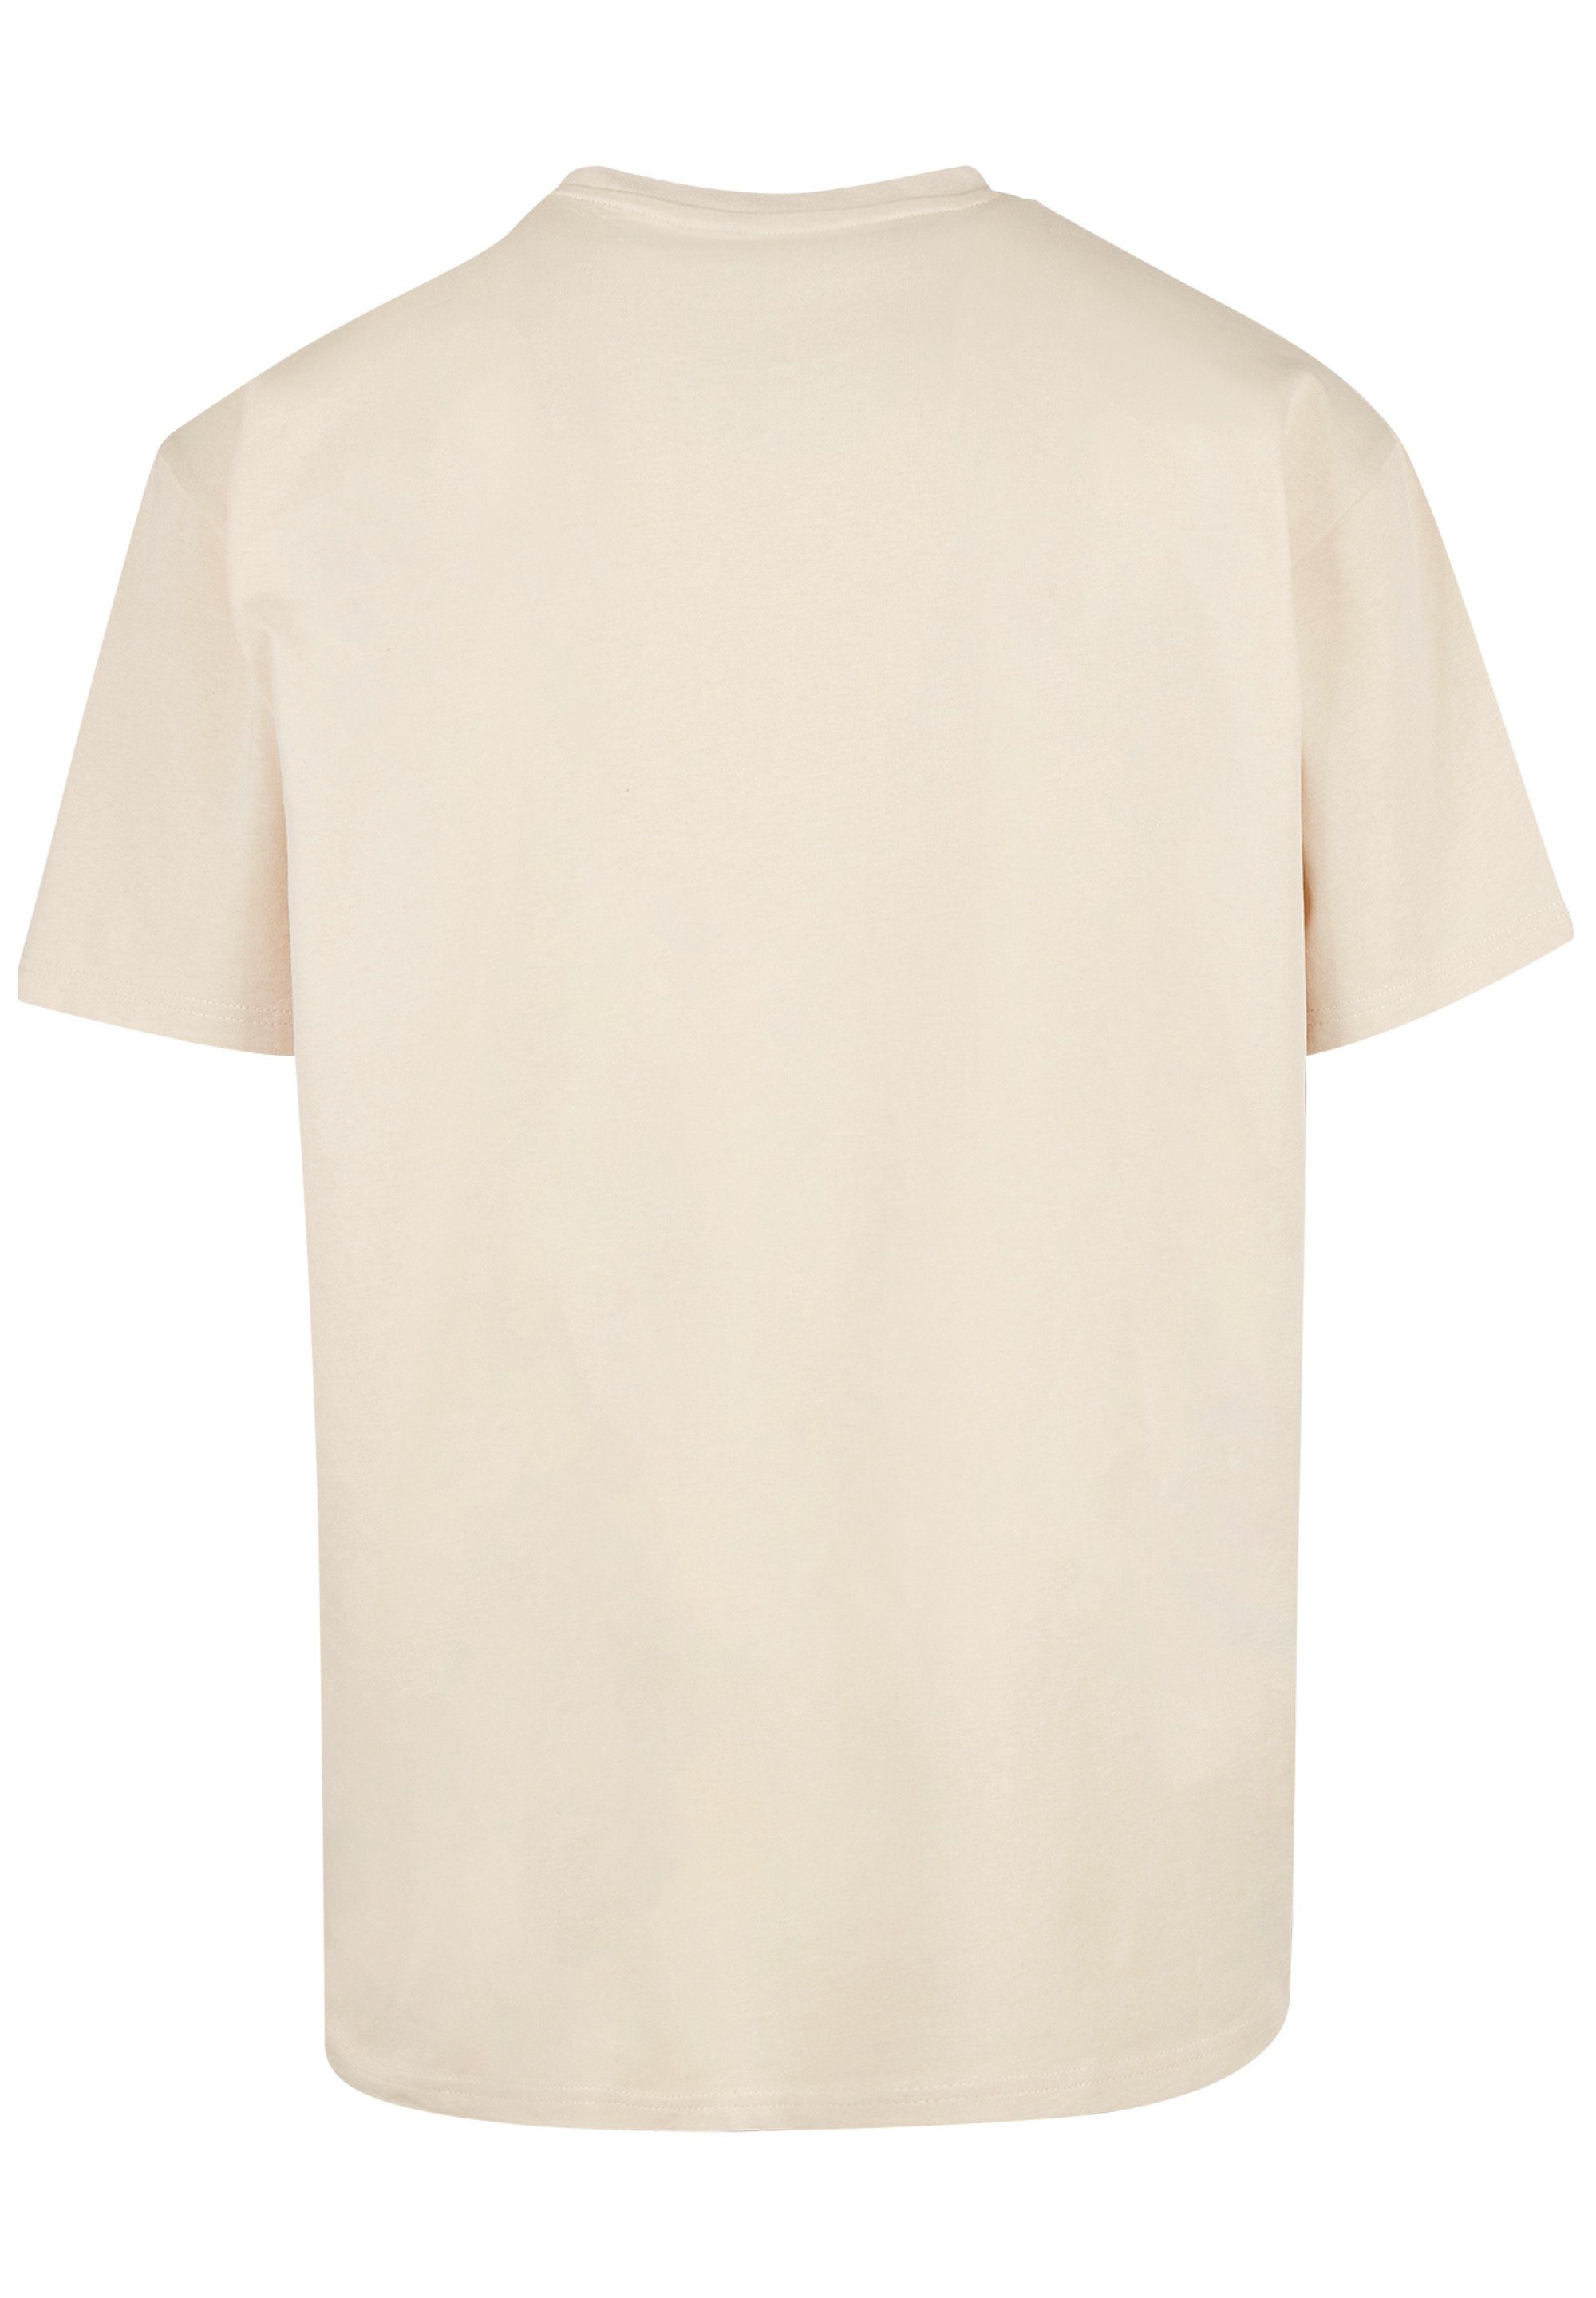 F4NT4STIC T-Shirt Basketball Adler Print, Fällt weit aus, bitte eine Größe  kleiner bestellen | T-Shirts